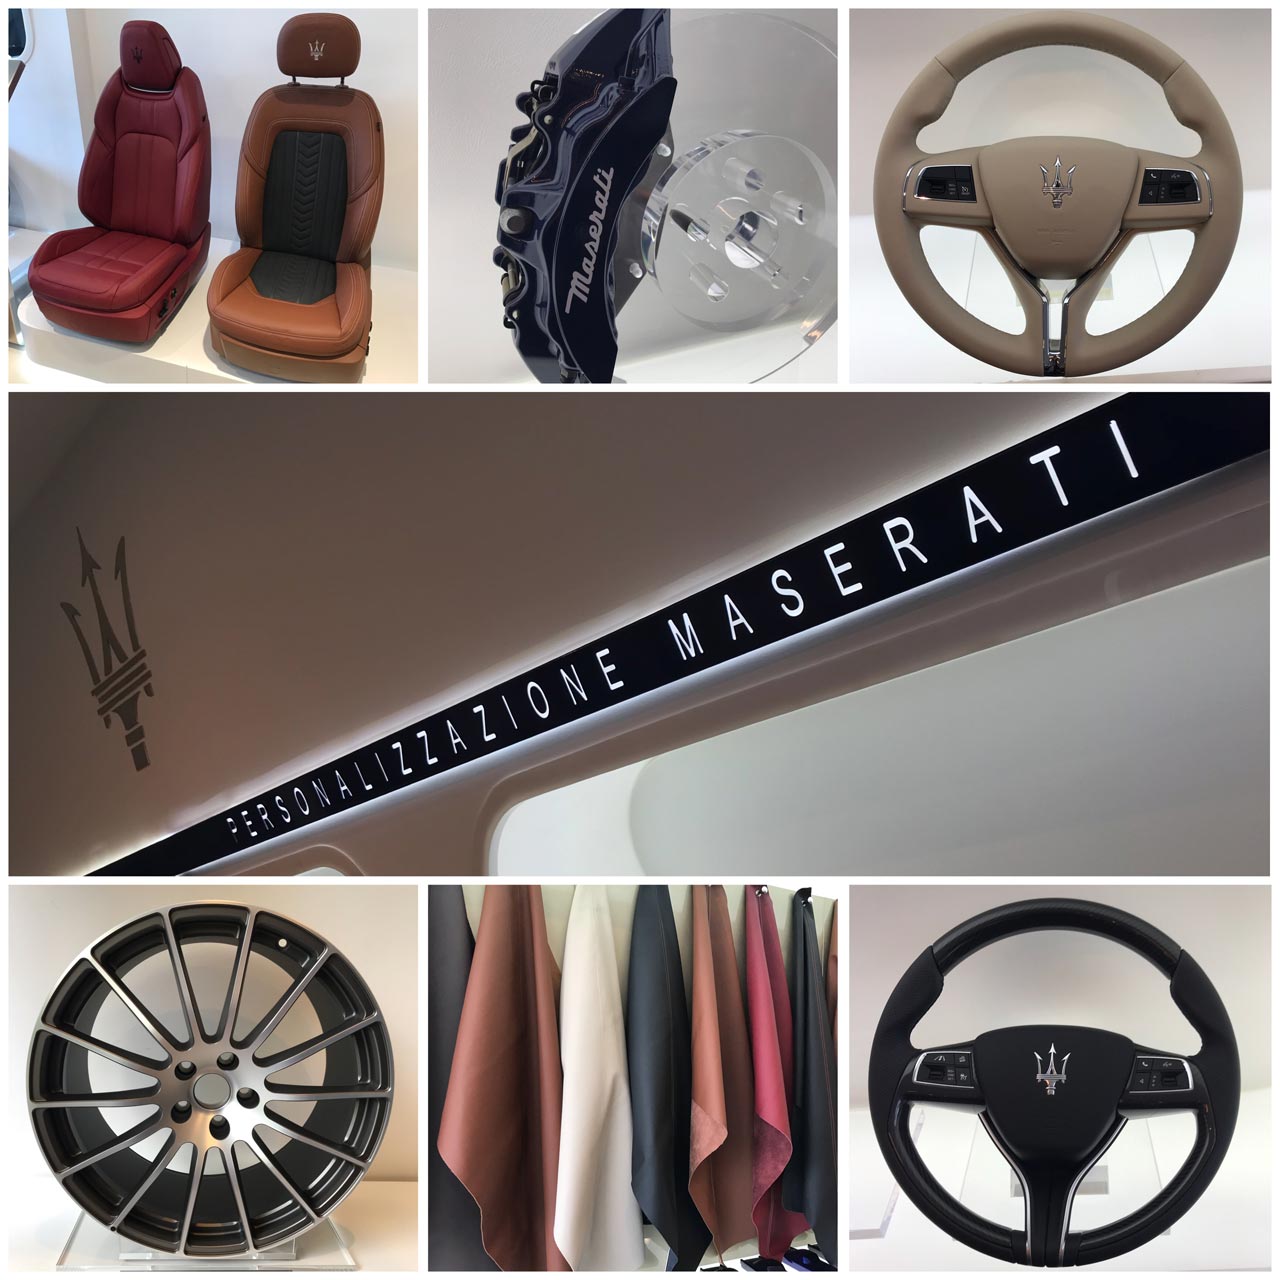 Personalización Maserati